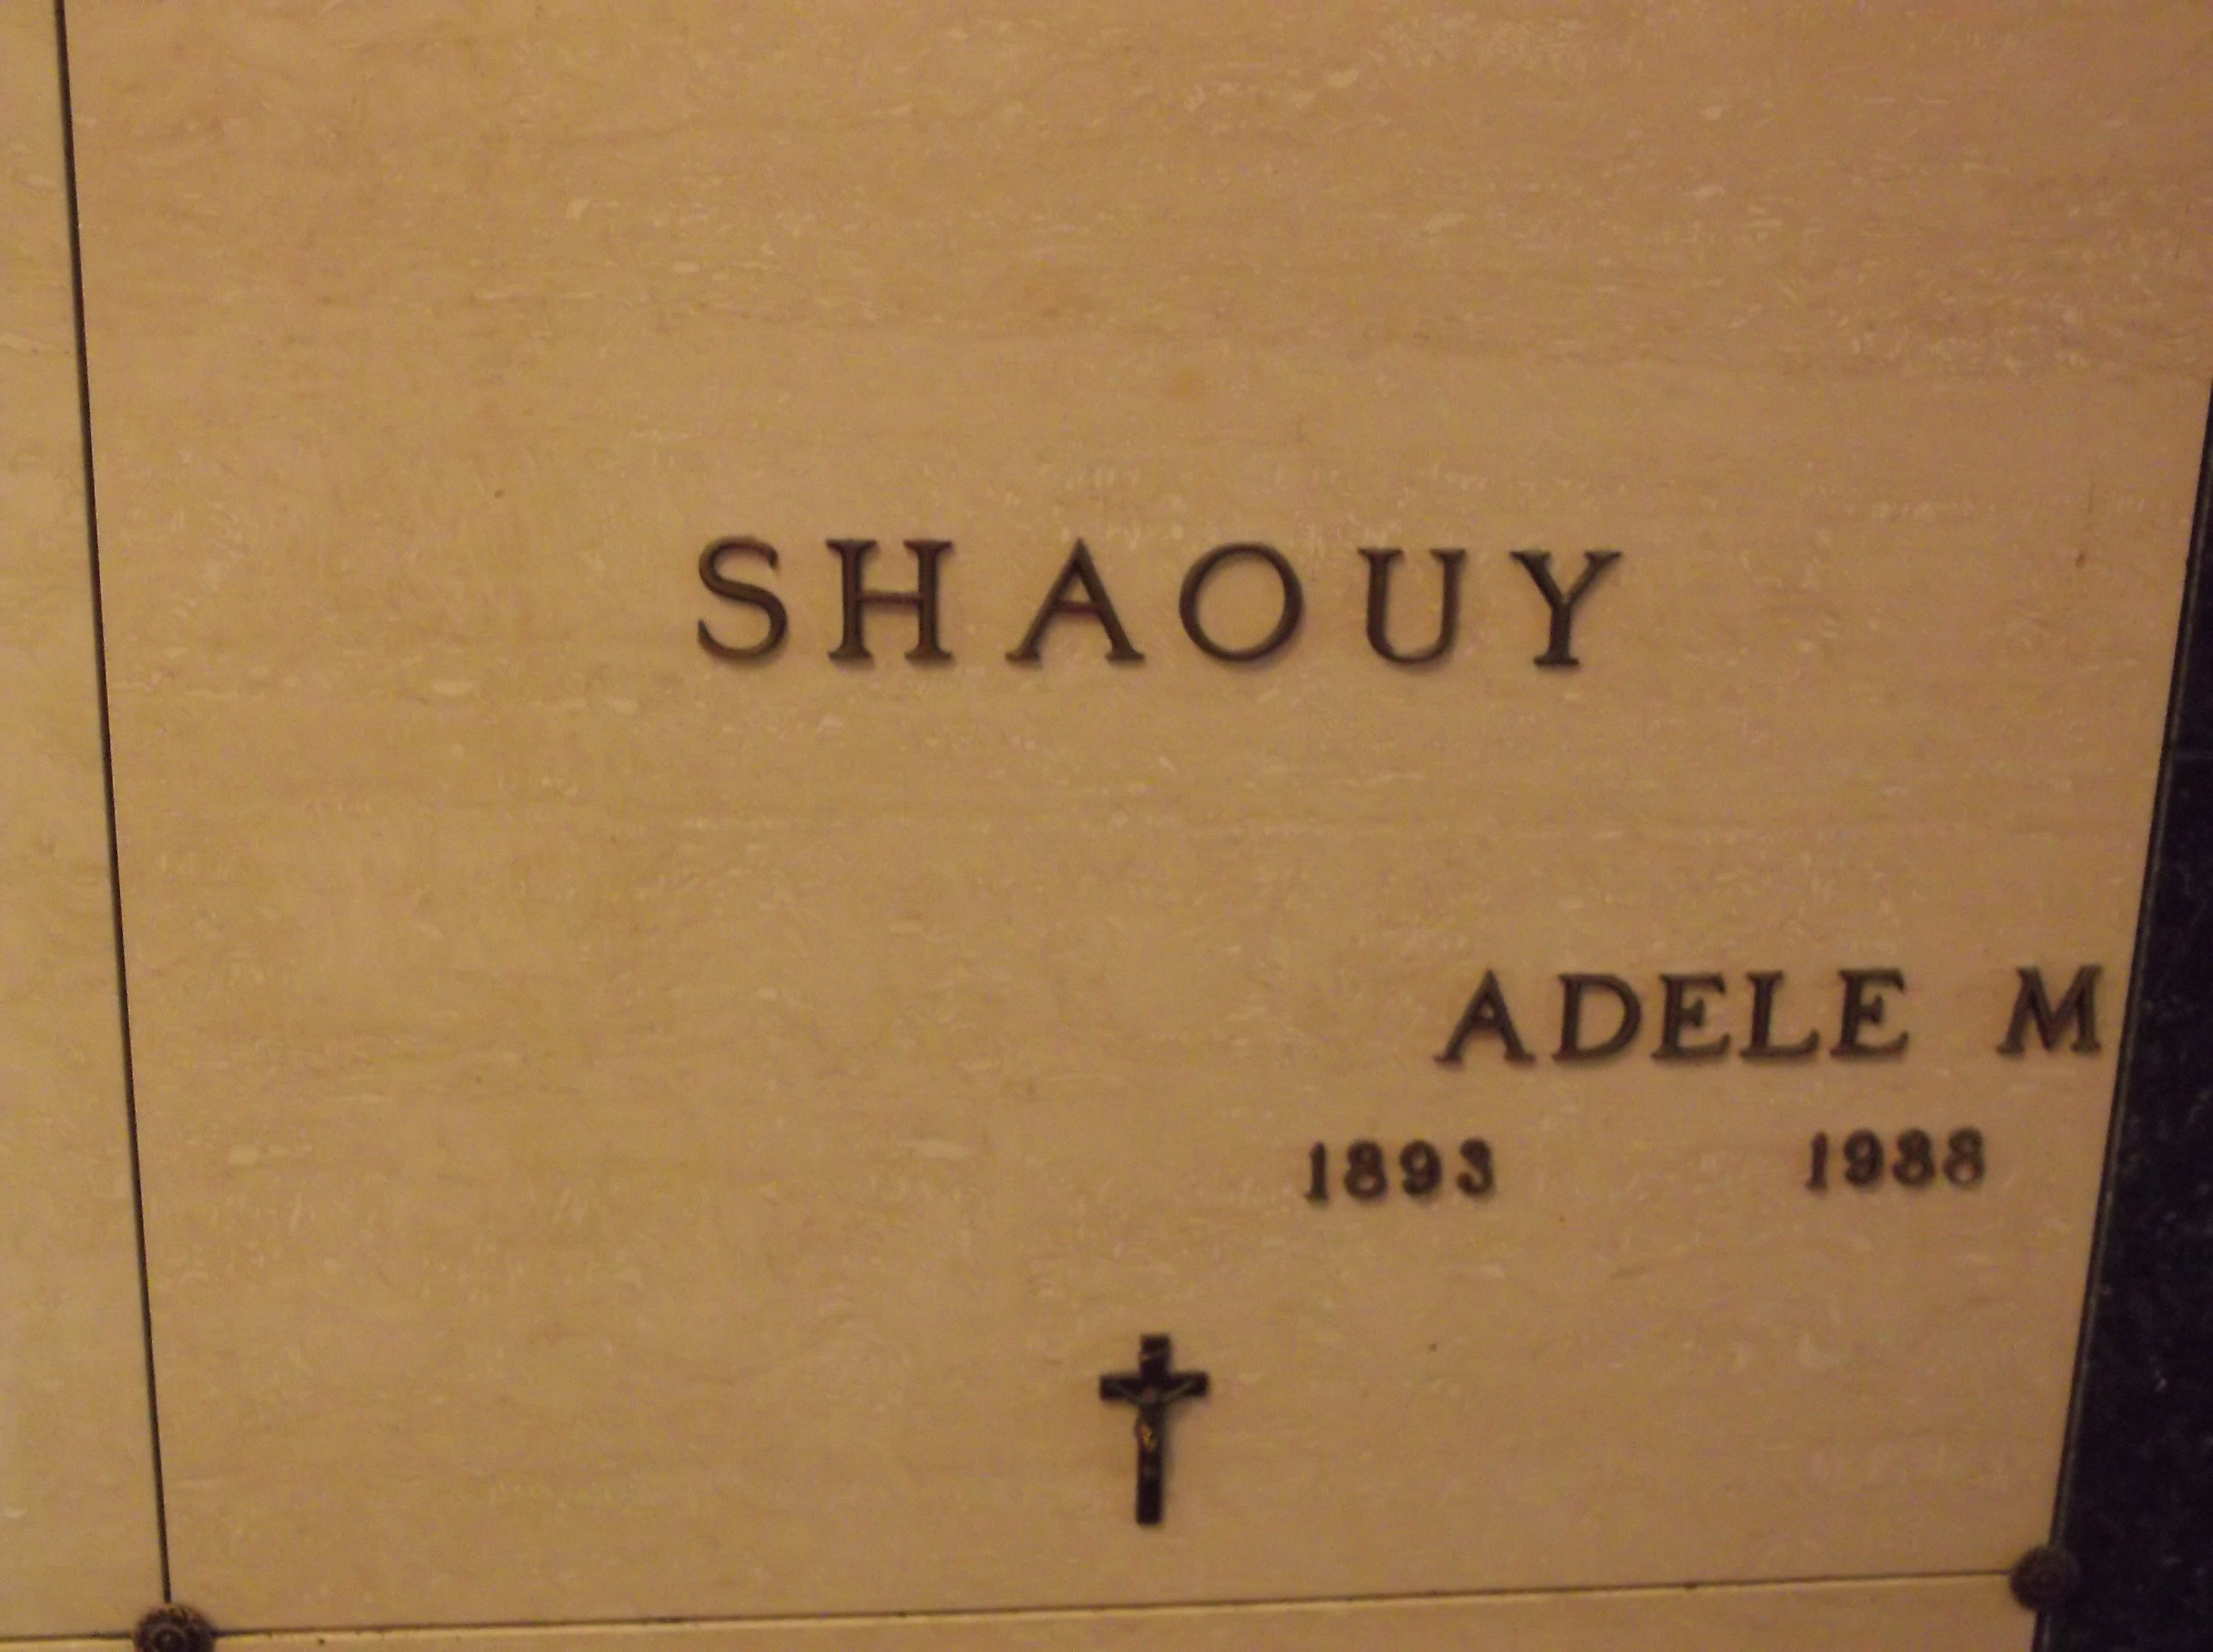 Adele M Shaouy